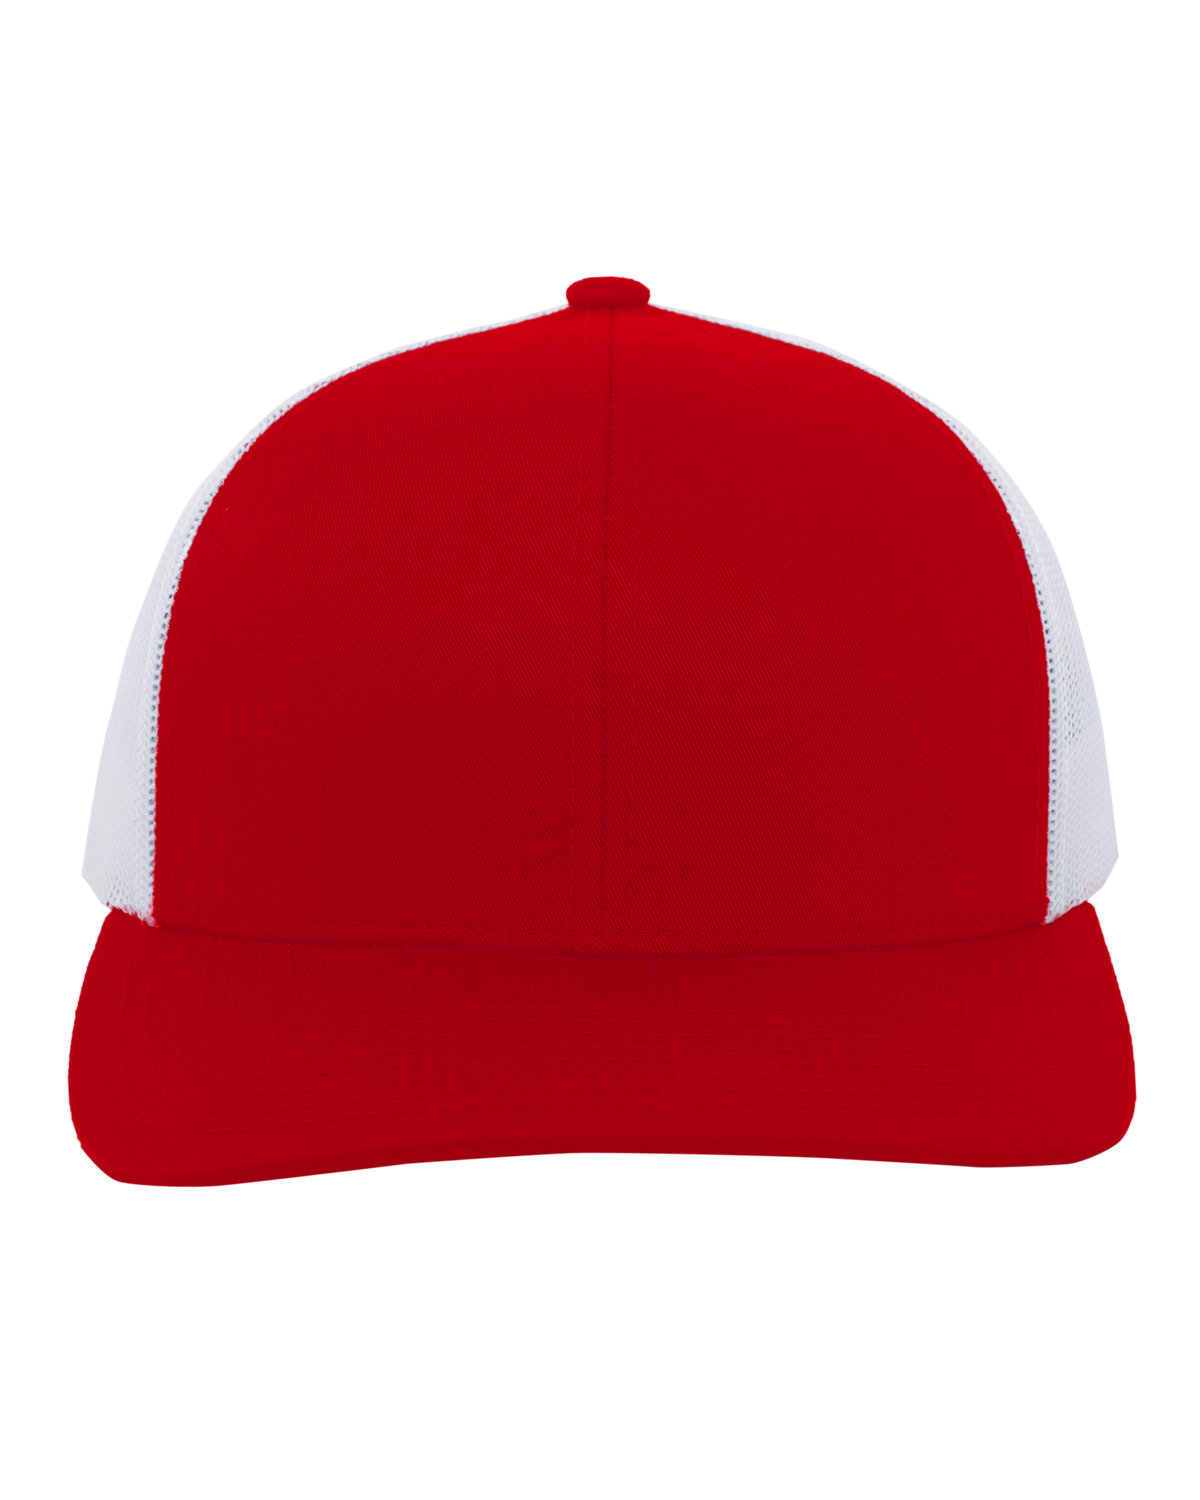 Pacific Headwear Trucker Snapback Hat RED/ WHITE 